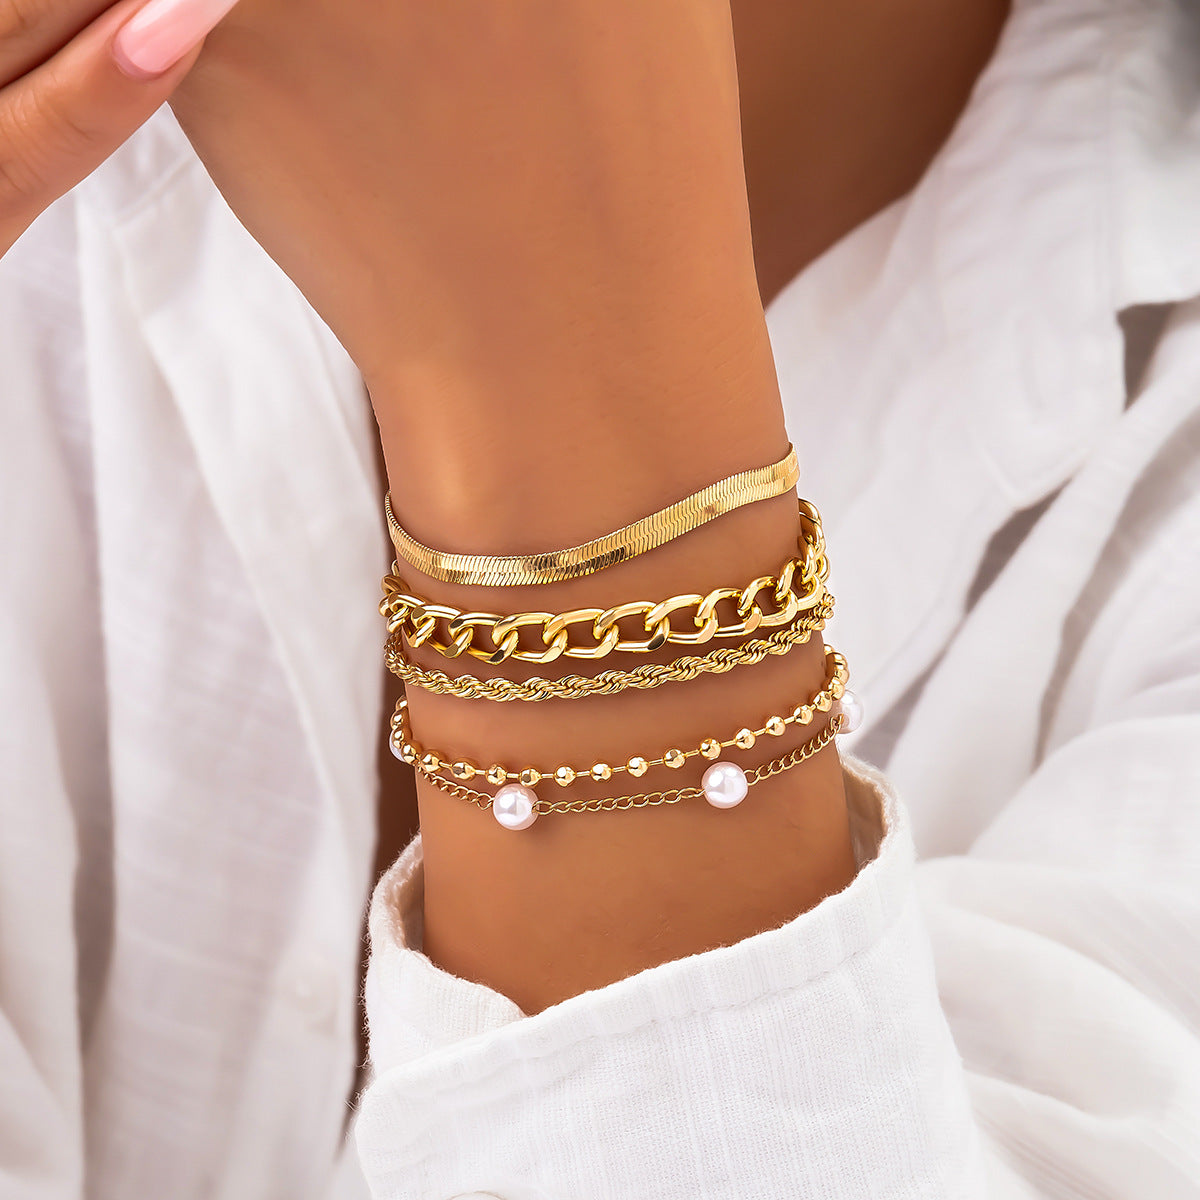 Women's Sweet Cool Imitation Pearl Suit Personality Cross Bracelets